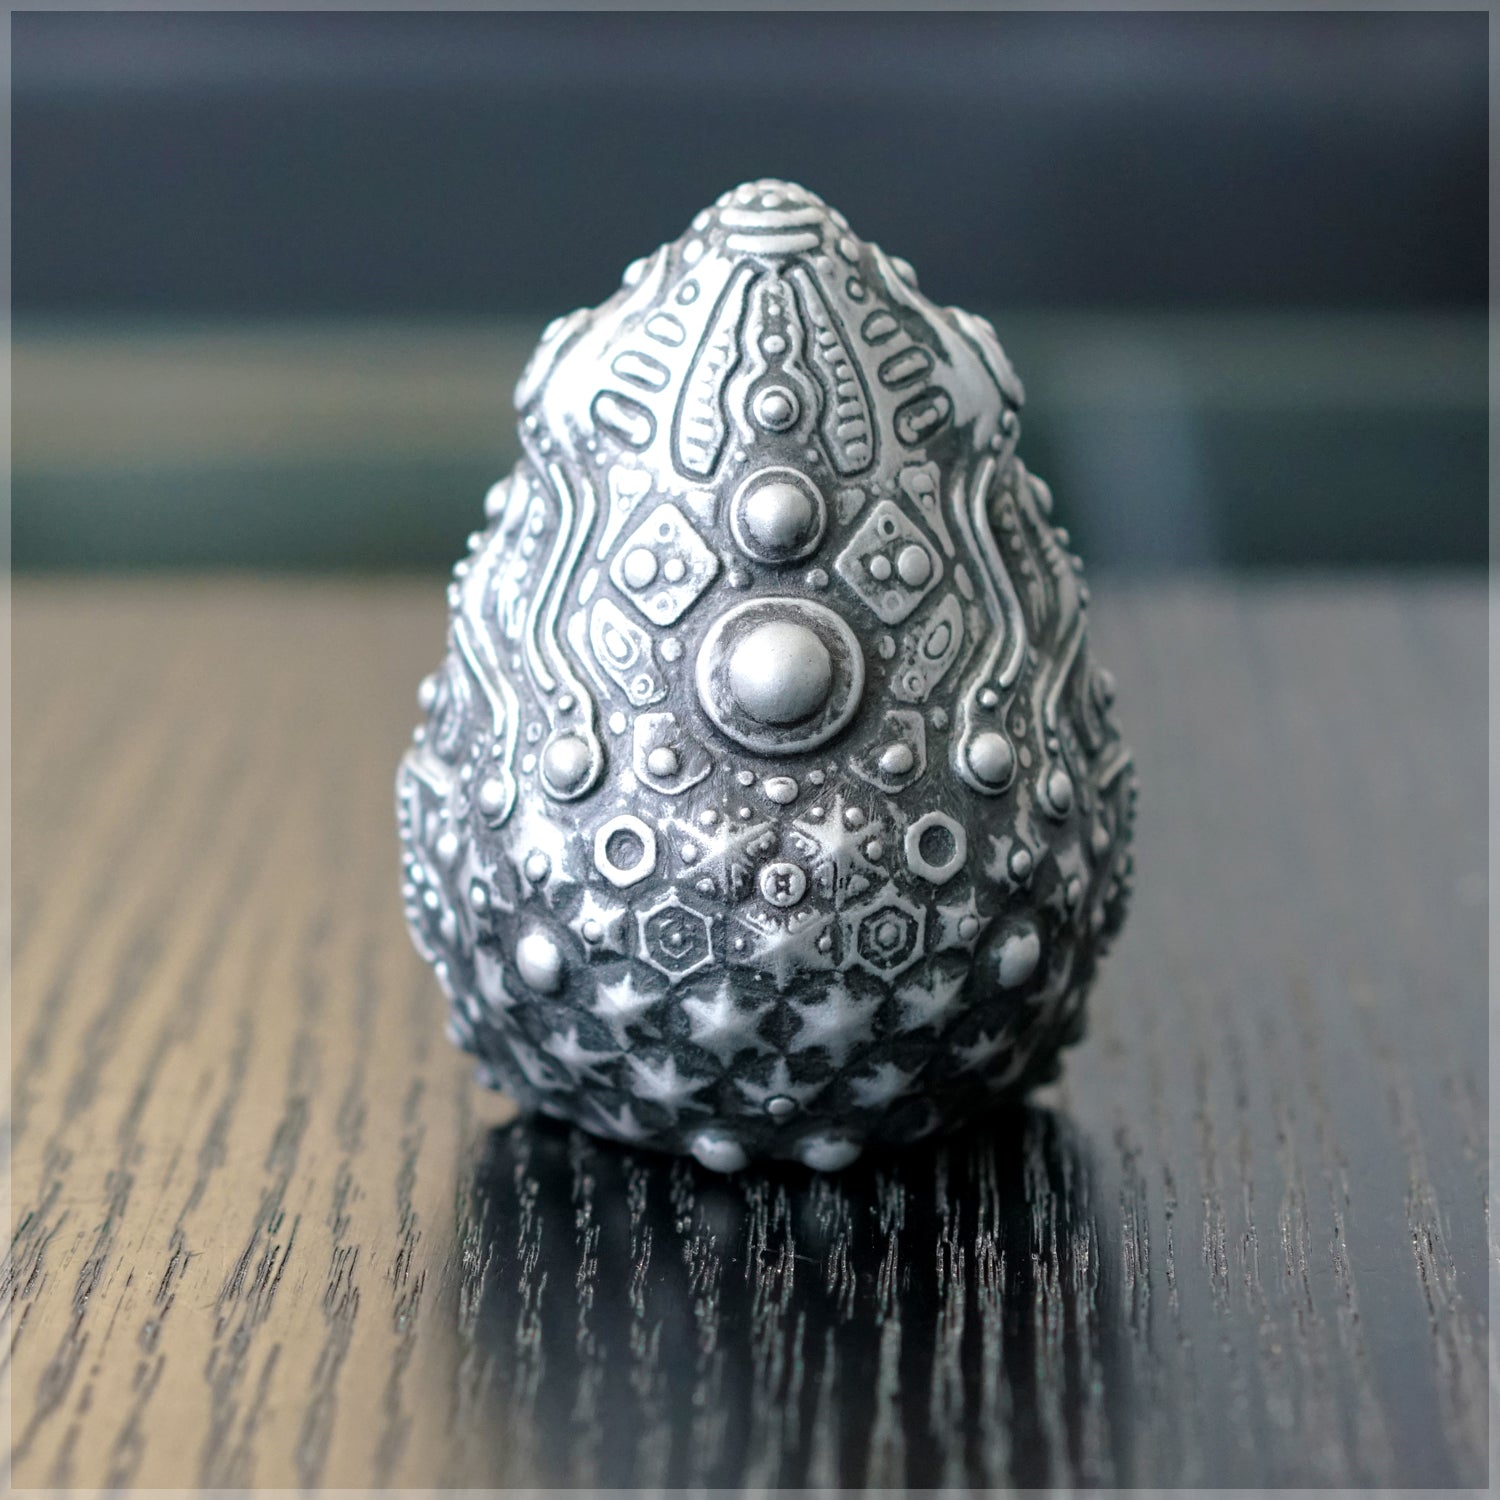 3-D Printed Egg Artifact - Nickel Brushed by Ben Ridgway